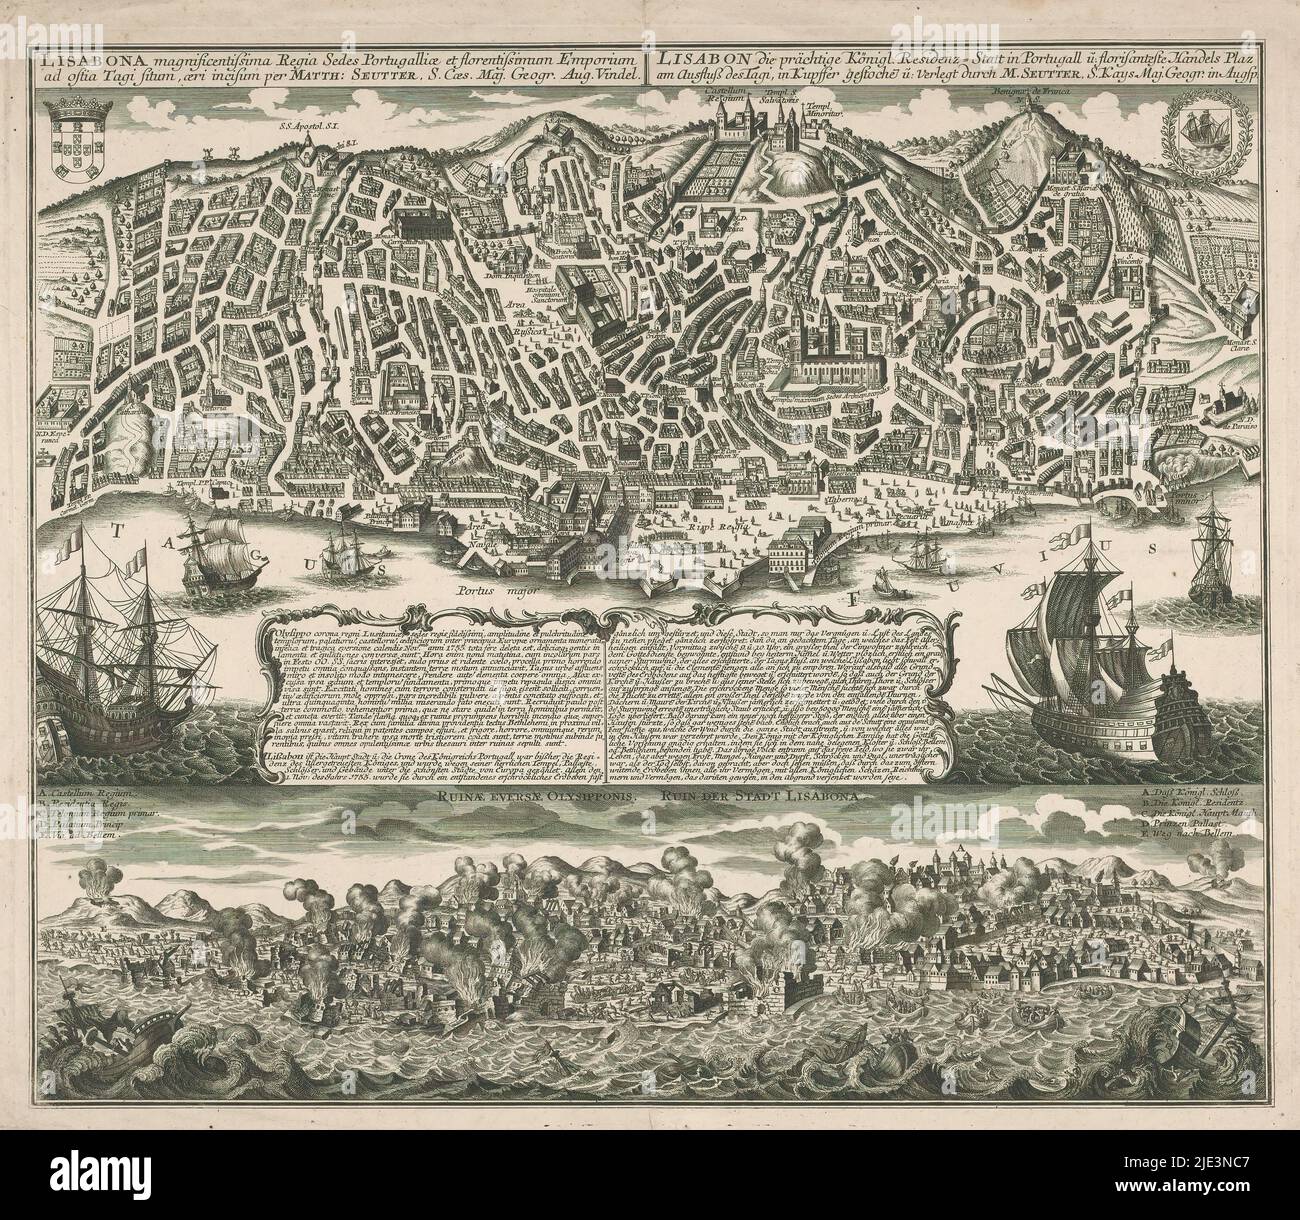 Karte von Lissabon mit Blick auf Lissabon während des Erdbebens von 1755, Lisabona magnizentissima regia sedes Portugalliae (...) / Lisabon die prächtige königl. residenz = statt in Portugal (...) / Ruinae eversae Olysipponis / Ruin der stadt Lisabona (Titel auf Objekt), über einer Karte von Lissabon in der Vogelperspektive. Oben links das Wappen Portugals, oben rechts das von Lissabon. Unten eine Ansicht von Lissabon während des Erdbebens, das sich am 1. November 1755 ereignete., Druckerei: Matthäus Seutter (III), (erwähnt auf Objekt), Verlag: Matthäus Seutter (III), (erwähnt auf Objekt), Augsburg, 1755 - 1757, Papier Stockfoto